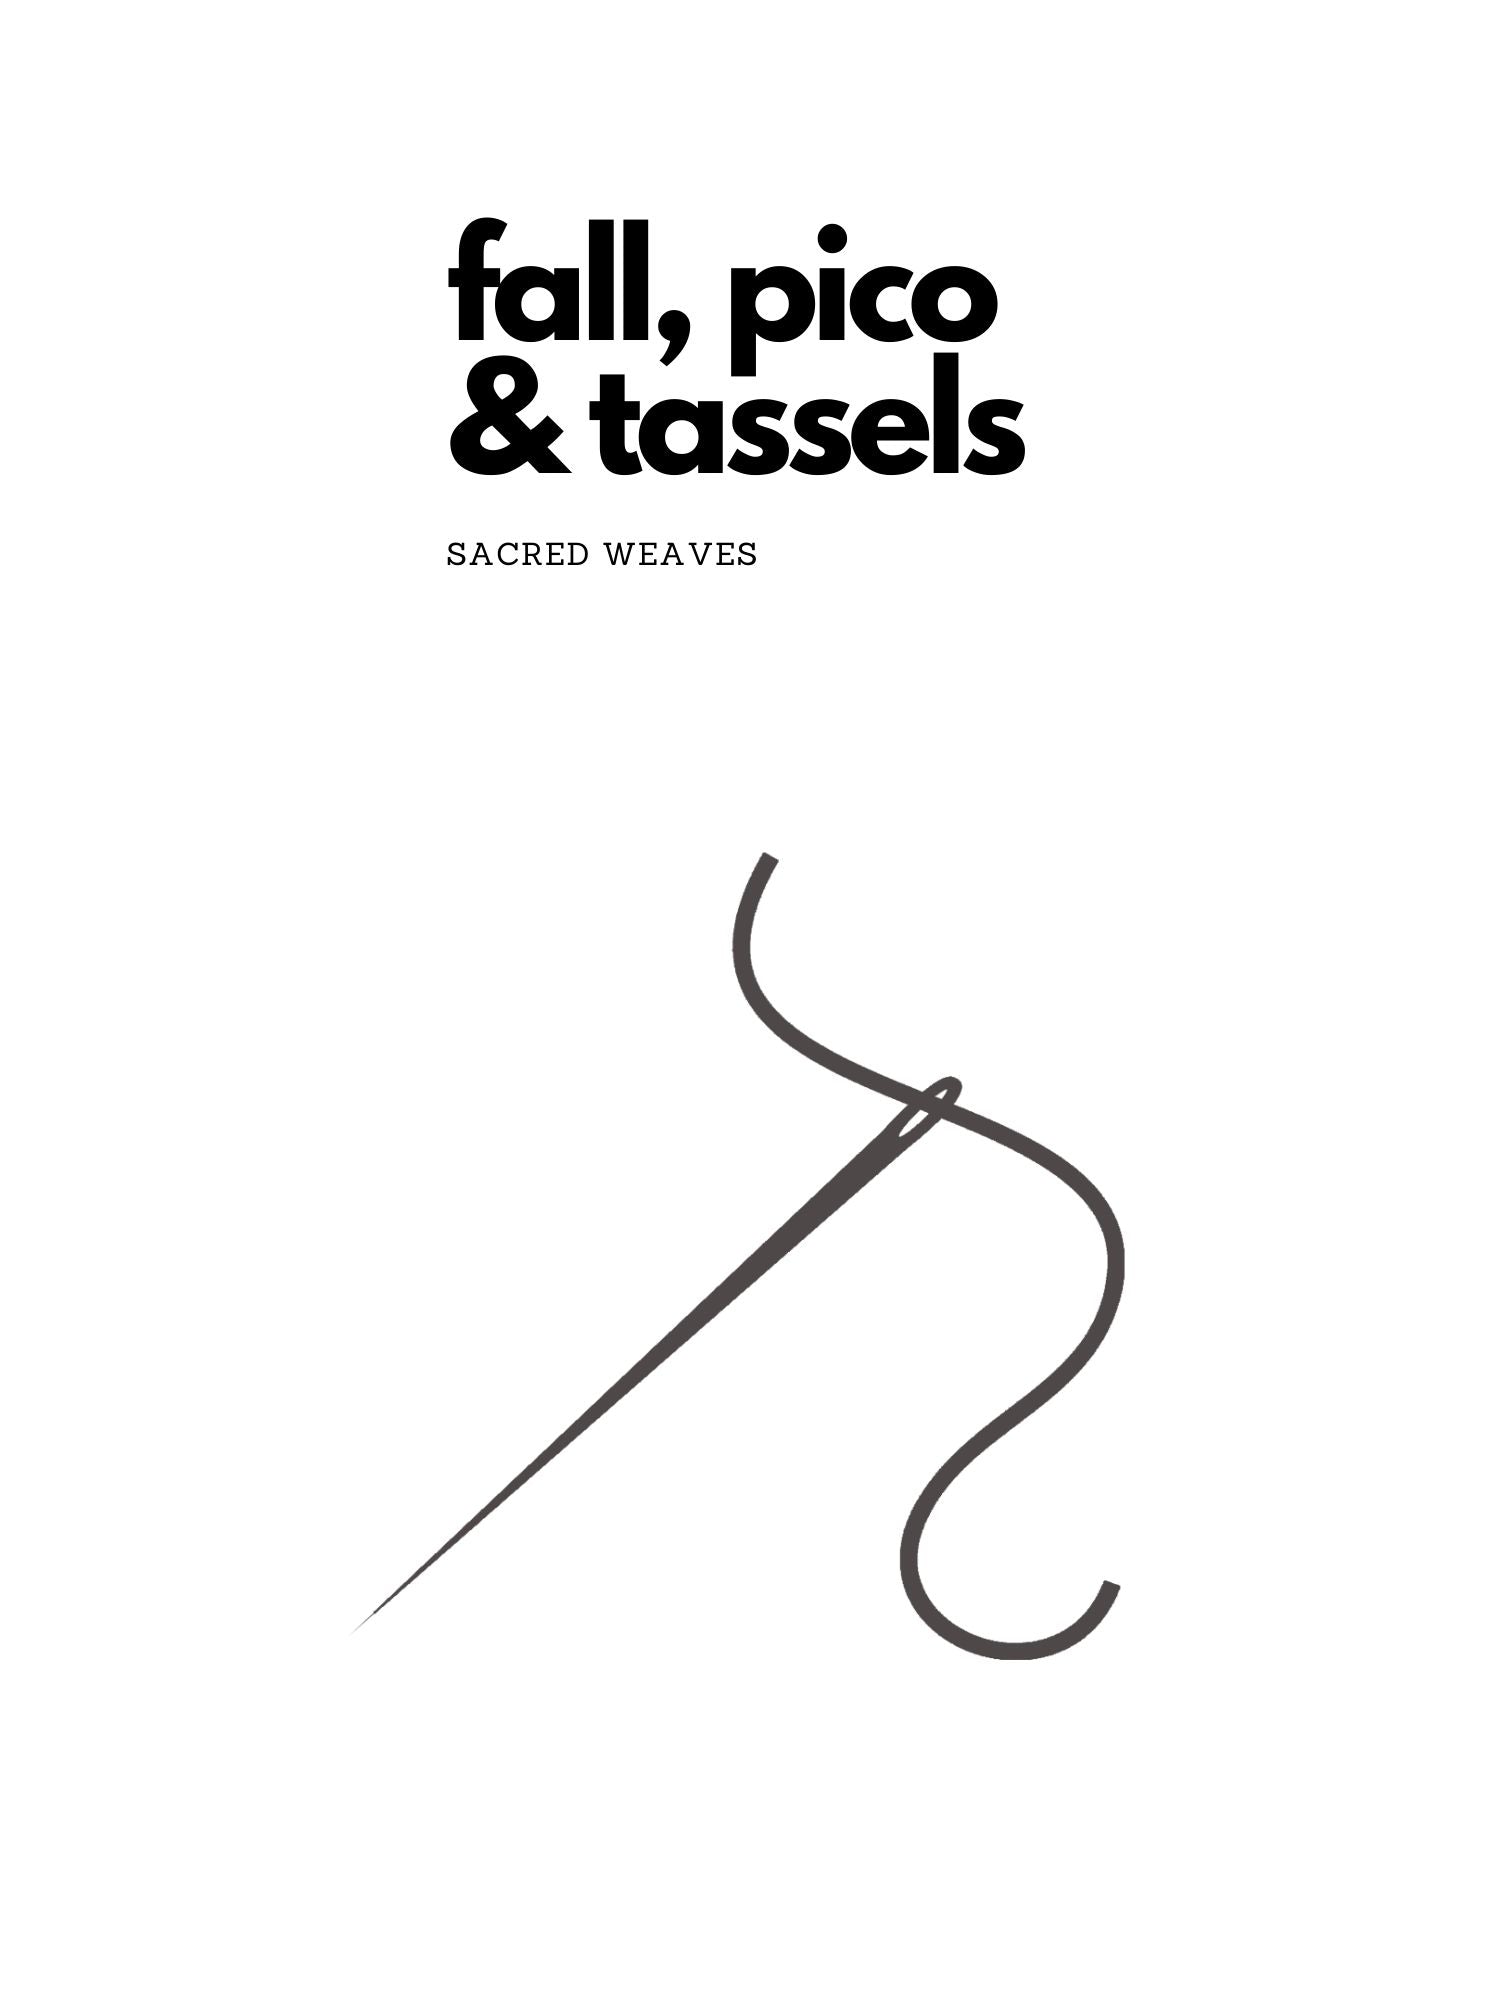 Fall/Pico & Tassels - Sacred Weaves